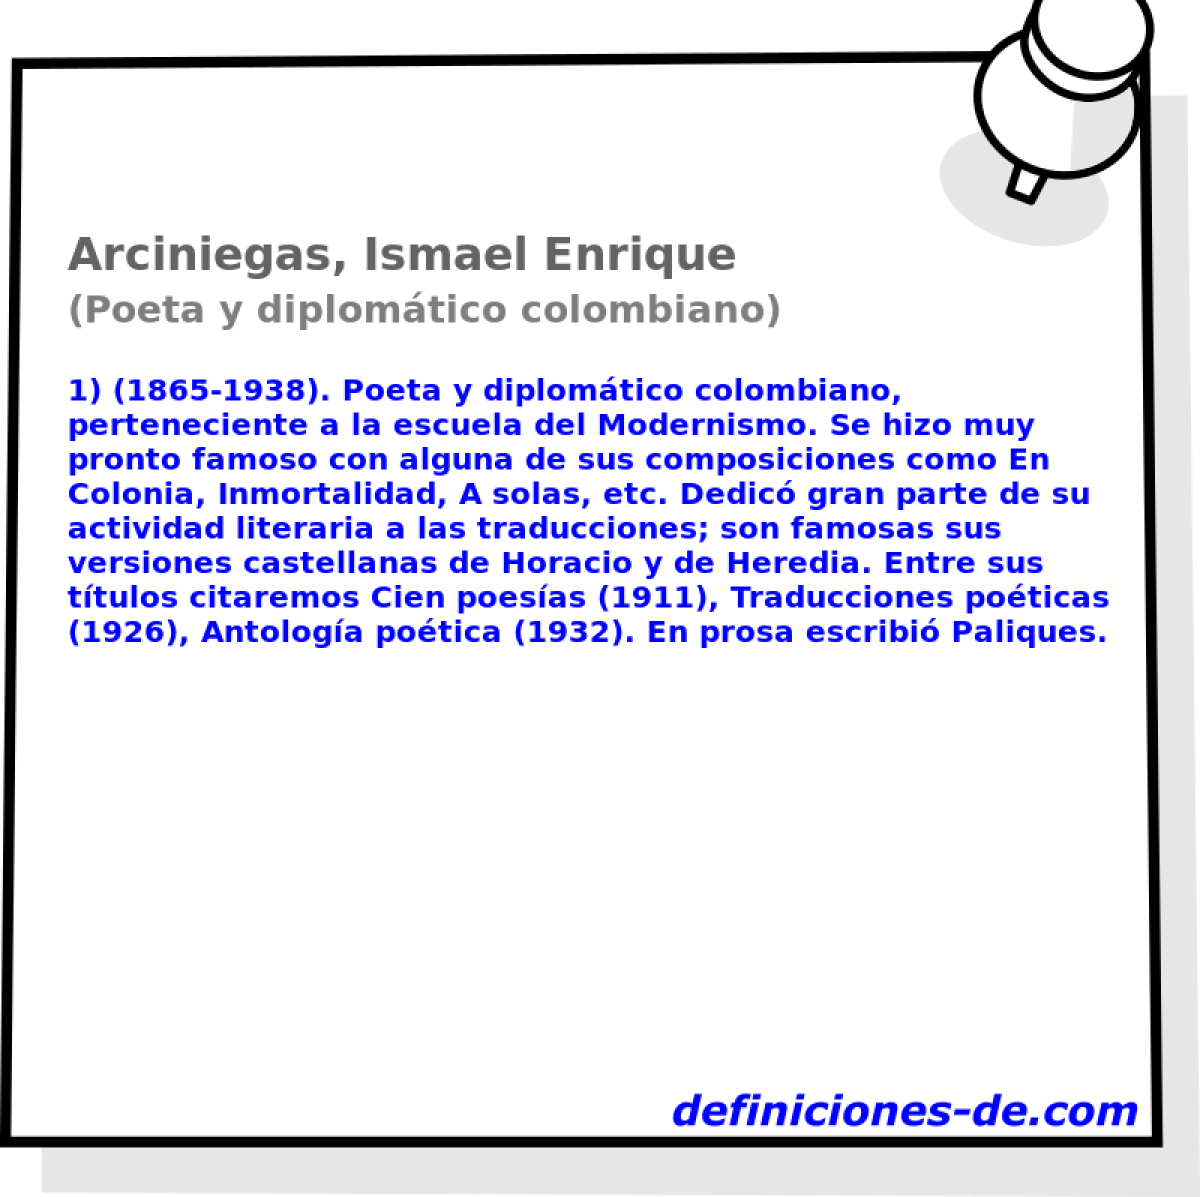 Arciniegas, Ismael Enrique (Poeta y diplomtico colombiano)